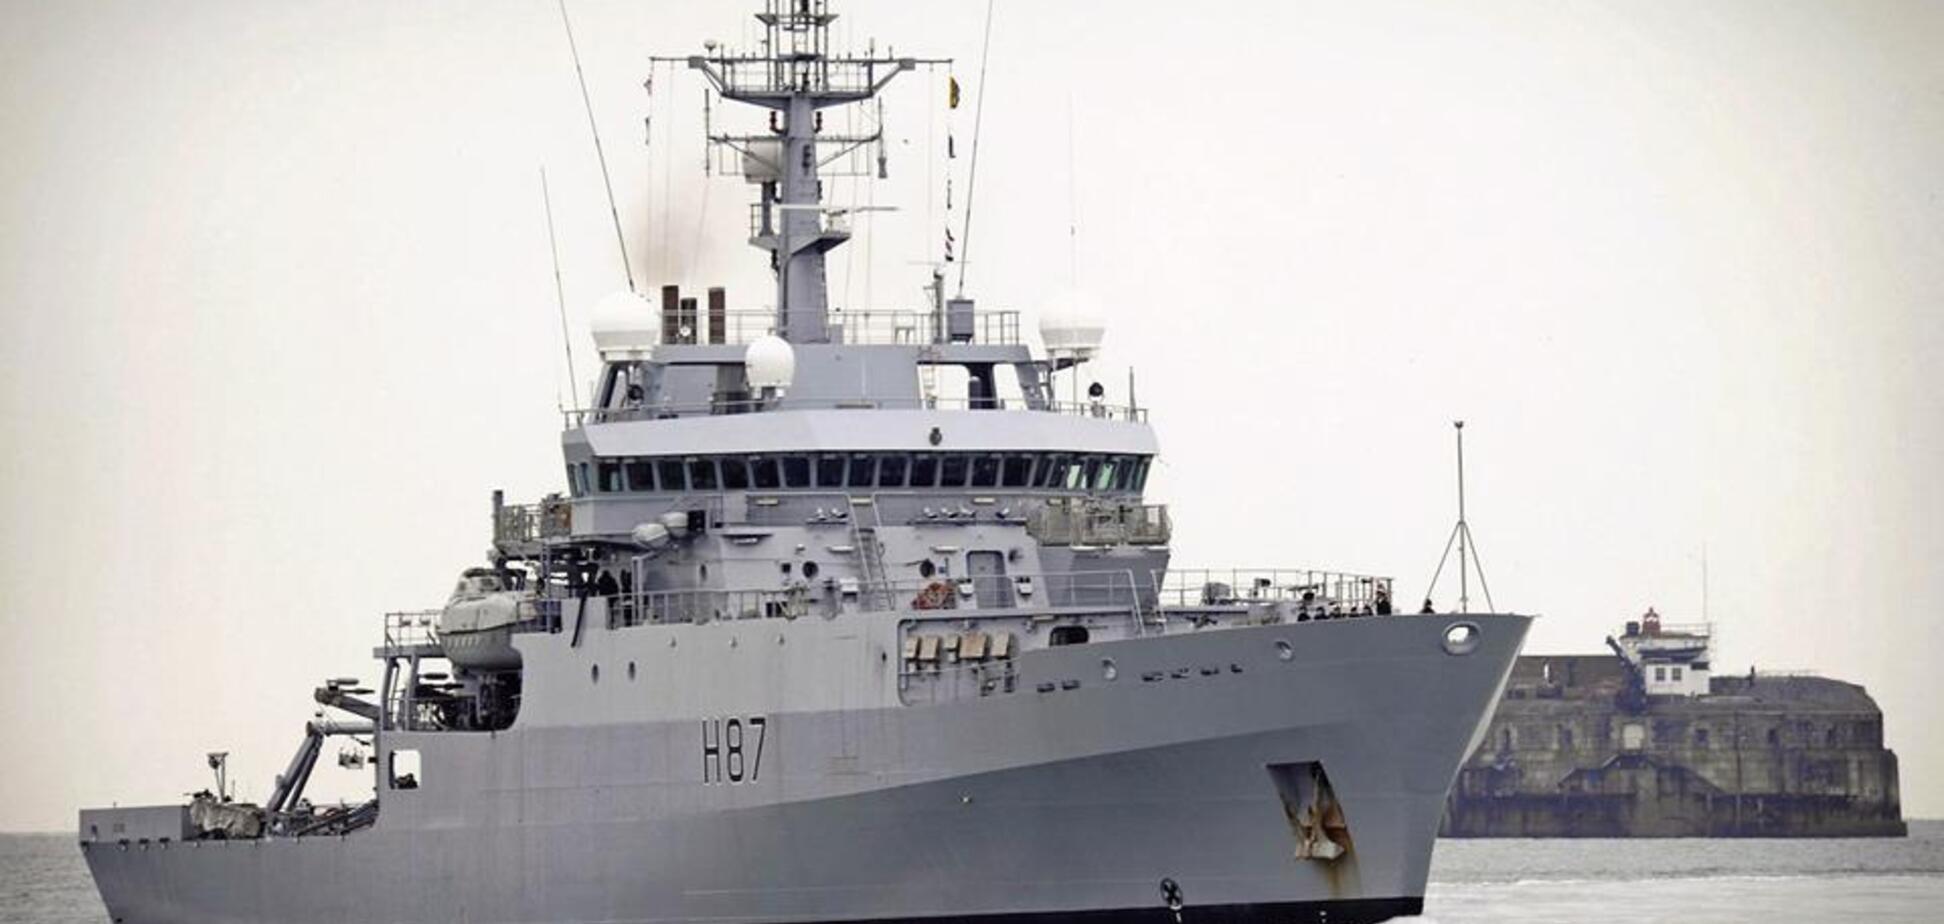  Путин довел: корабль НАТО срочно прибыл на помощь Украине